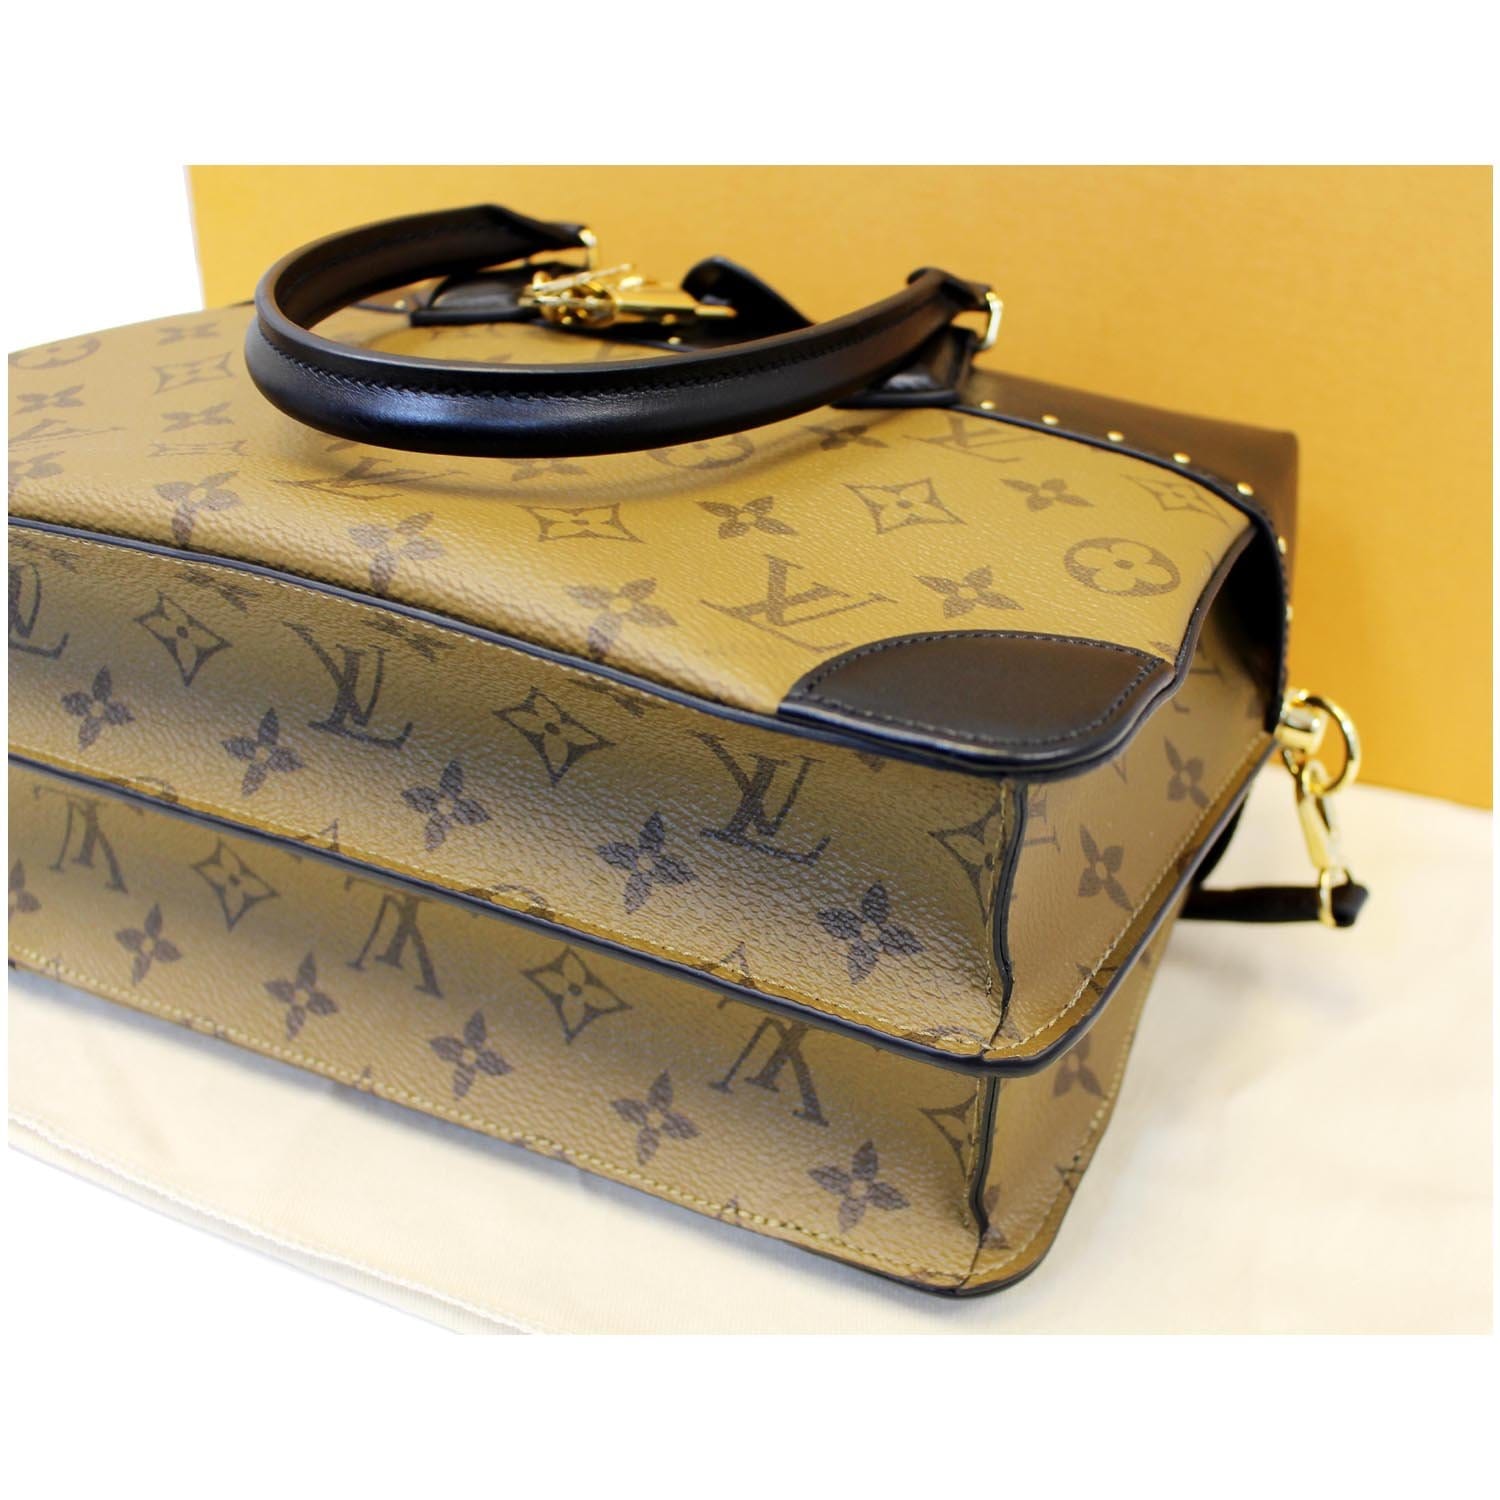 Louis Vuitton City Malle Bag